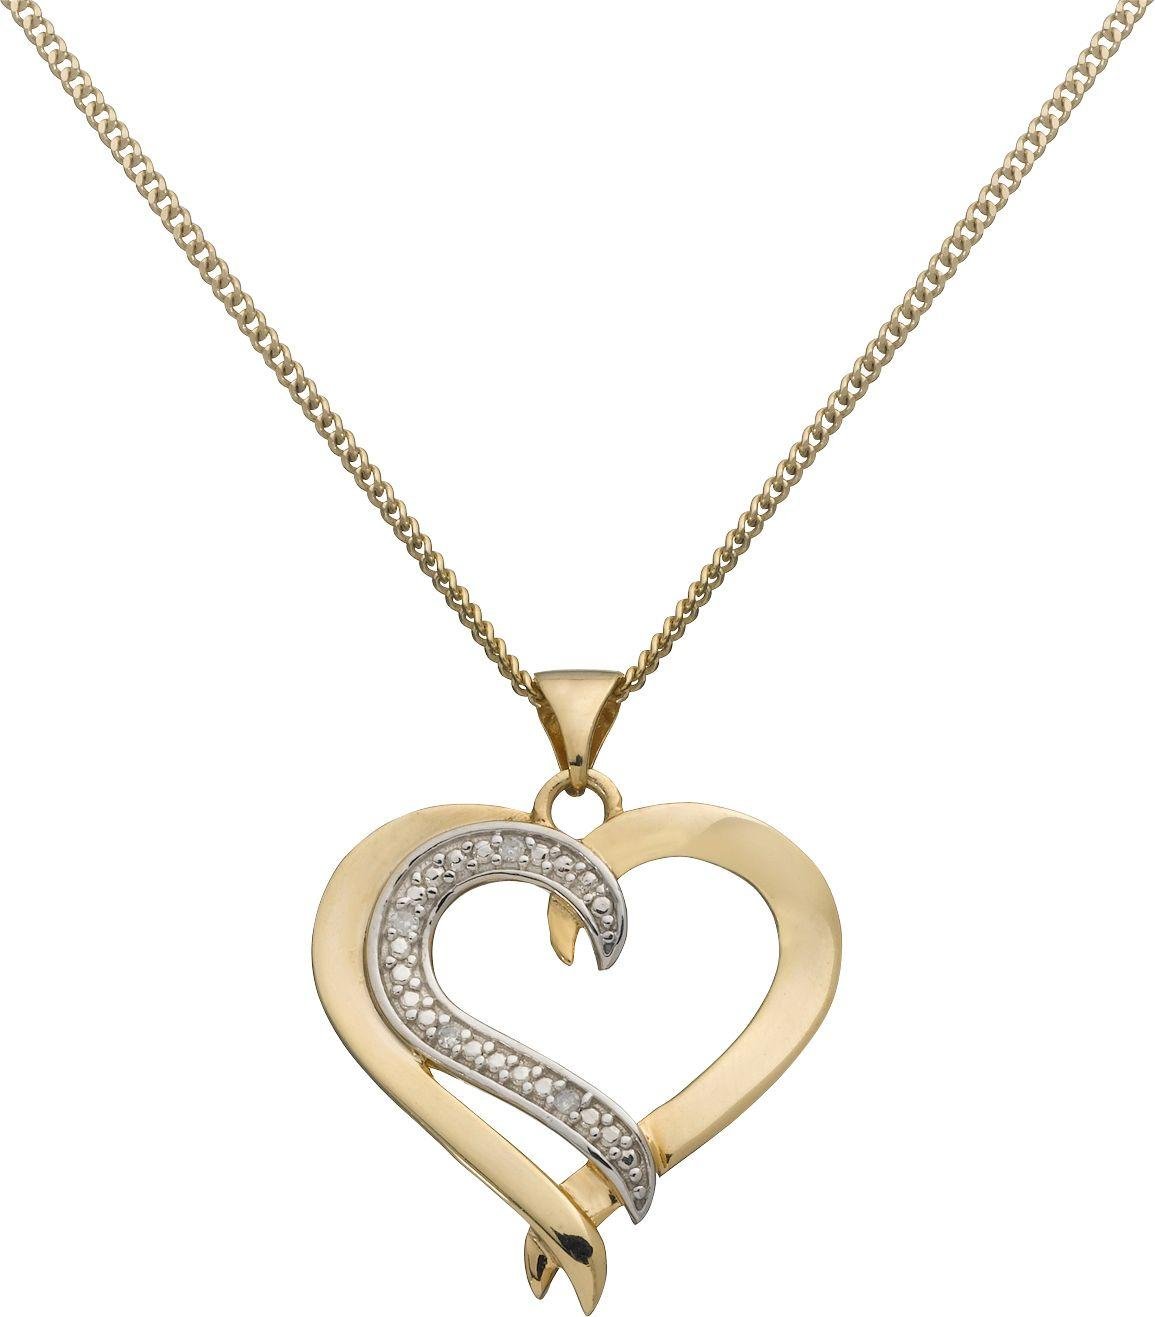 Revere Silver Diamond Accent Heart Pendant 18 Inch Necklace